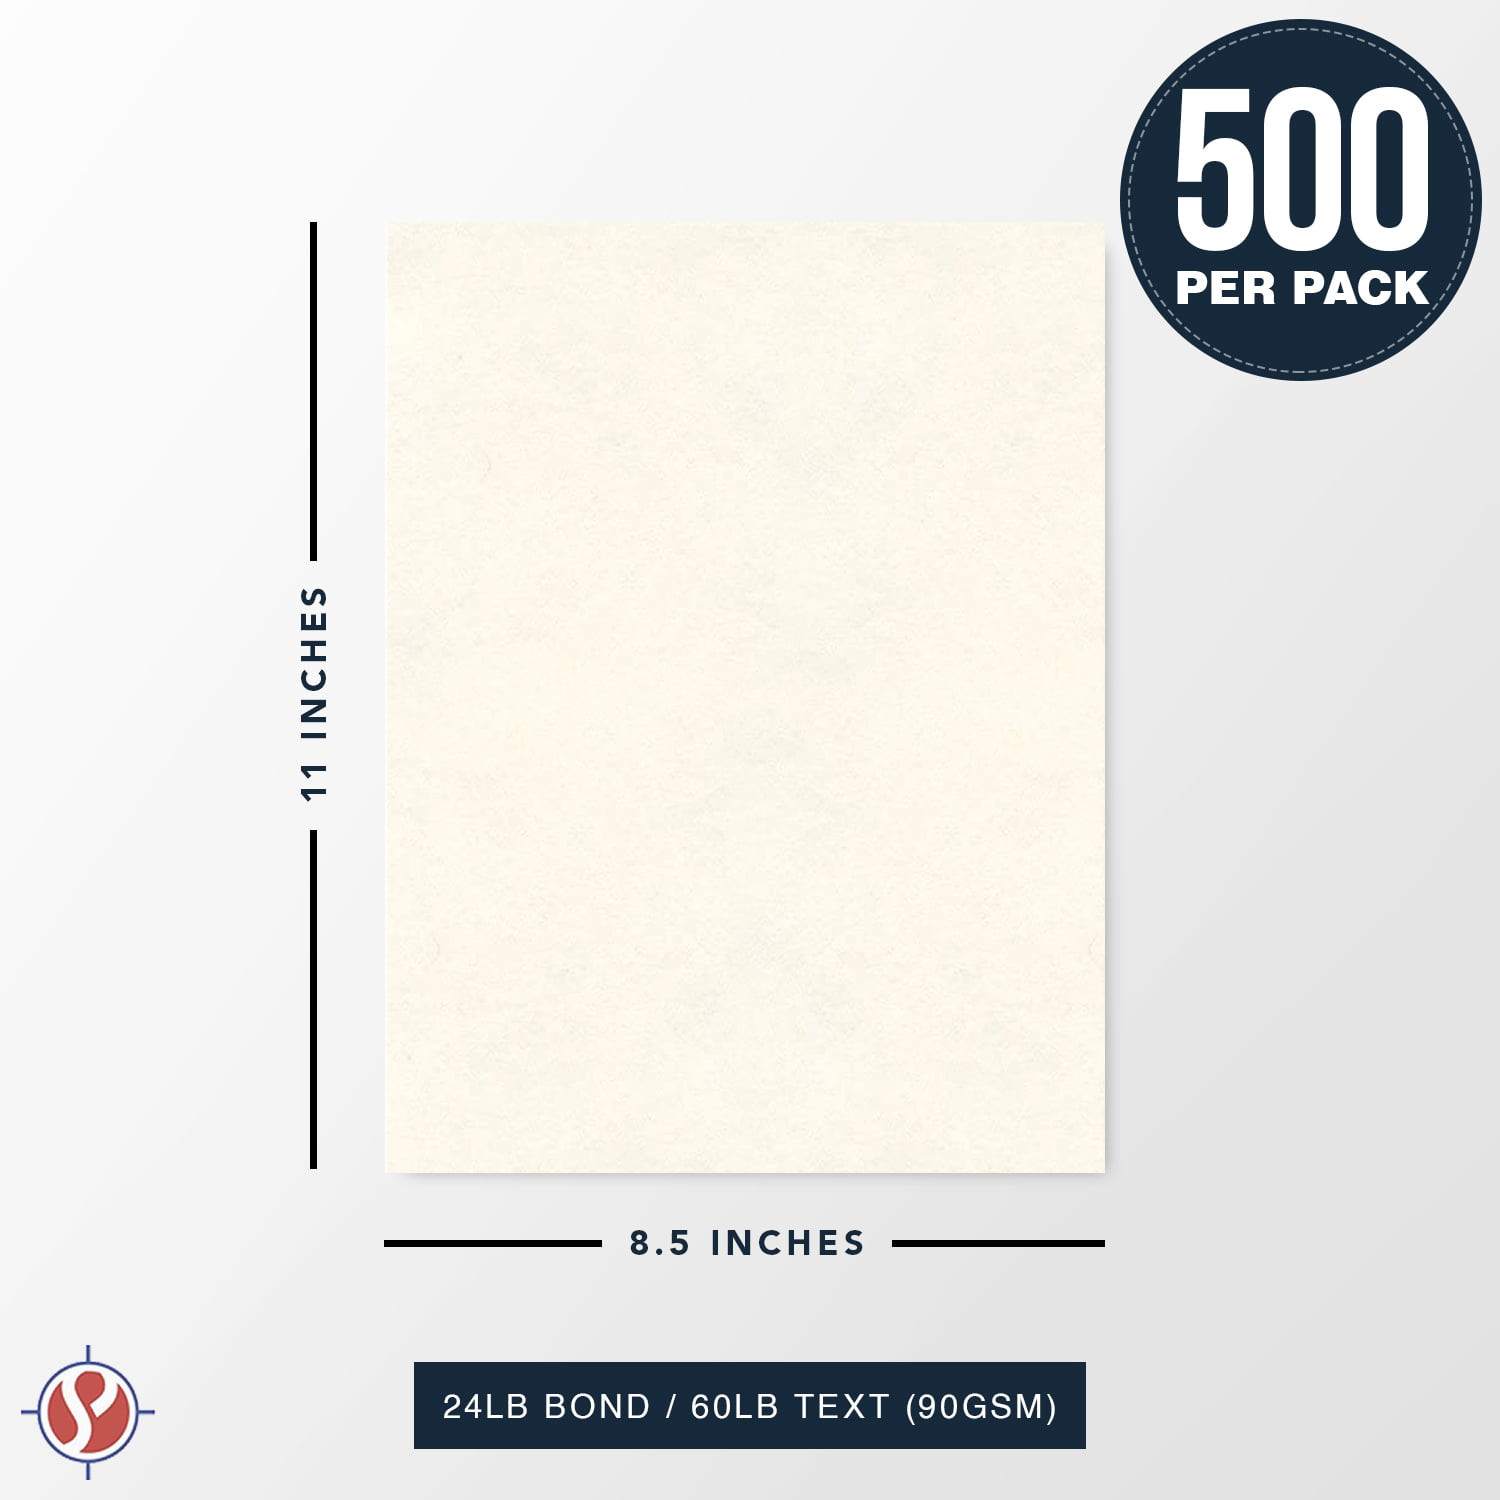 23 x 35 Large Size New White Parchment Paper, 24lb Bond / 60lb Text, 5 Qty